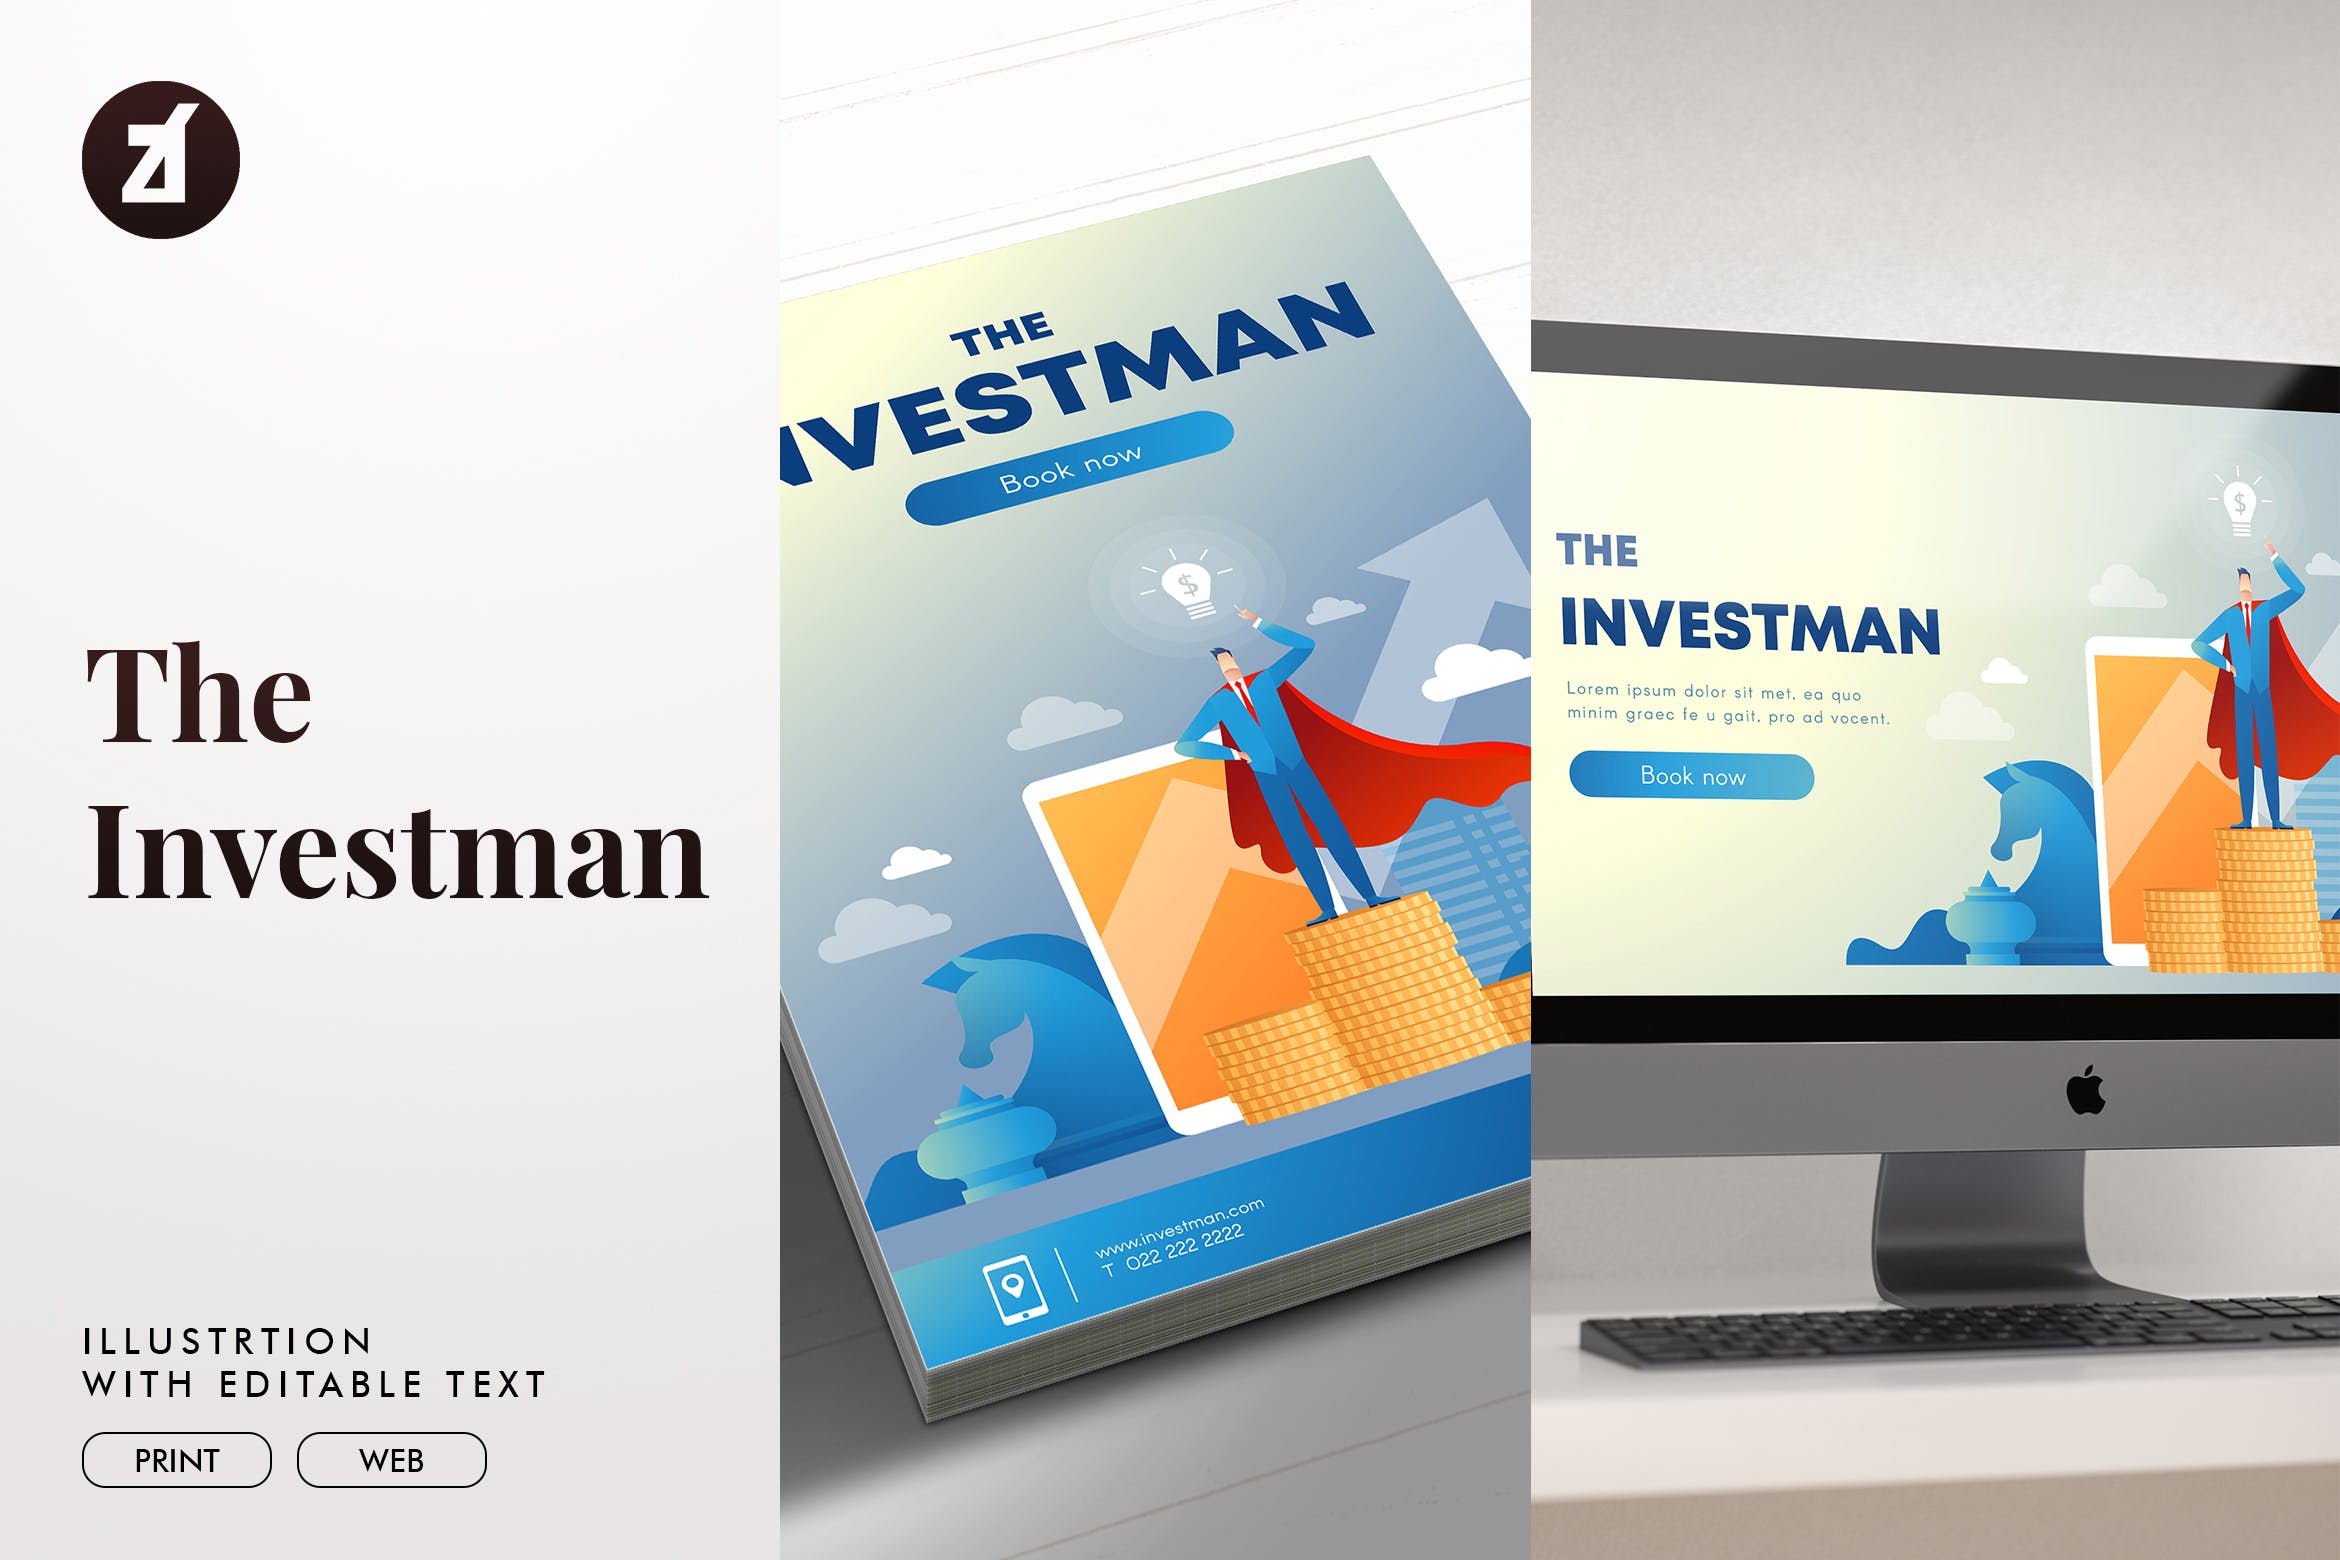 投资者主题矢量普贤居精选概念插画素材 The investman illustration with text layout插图